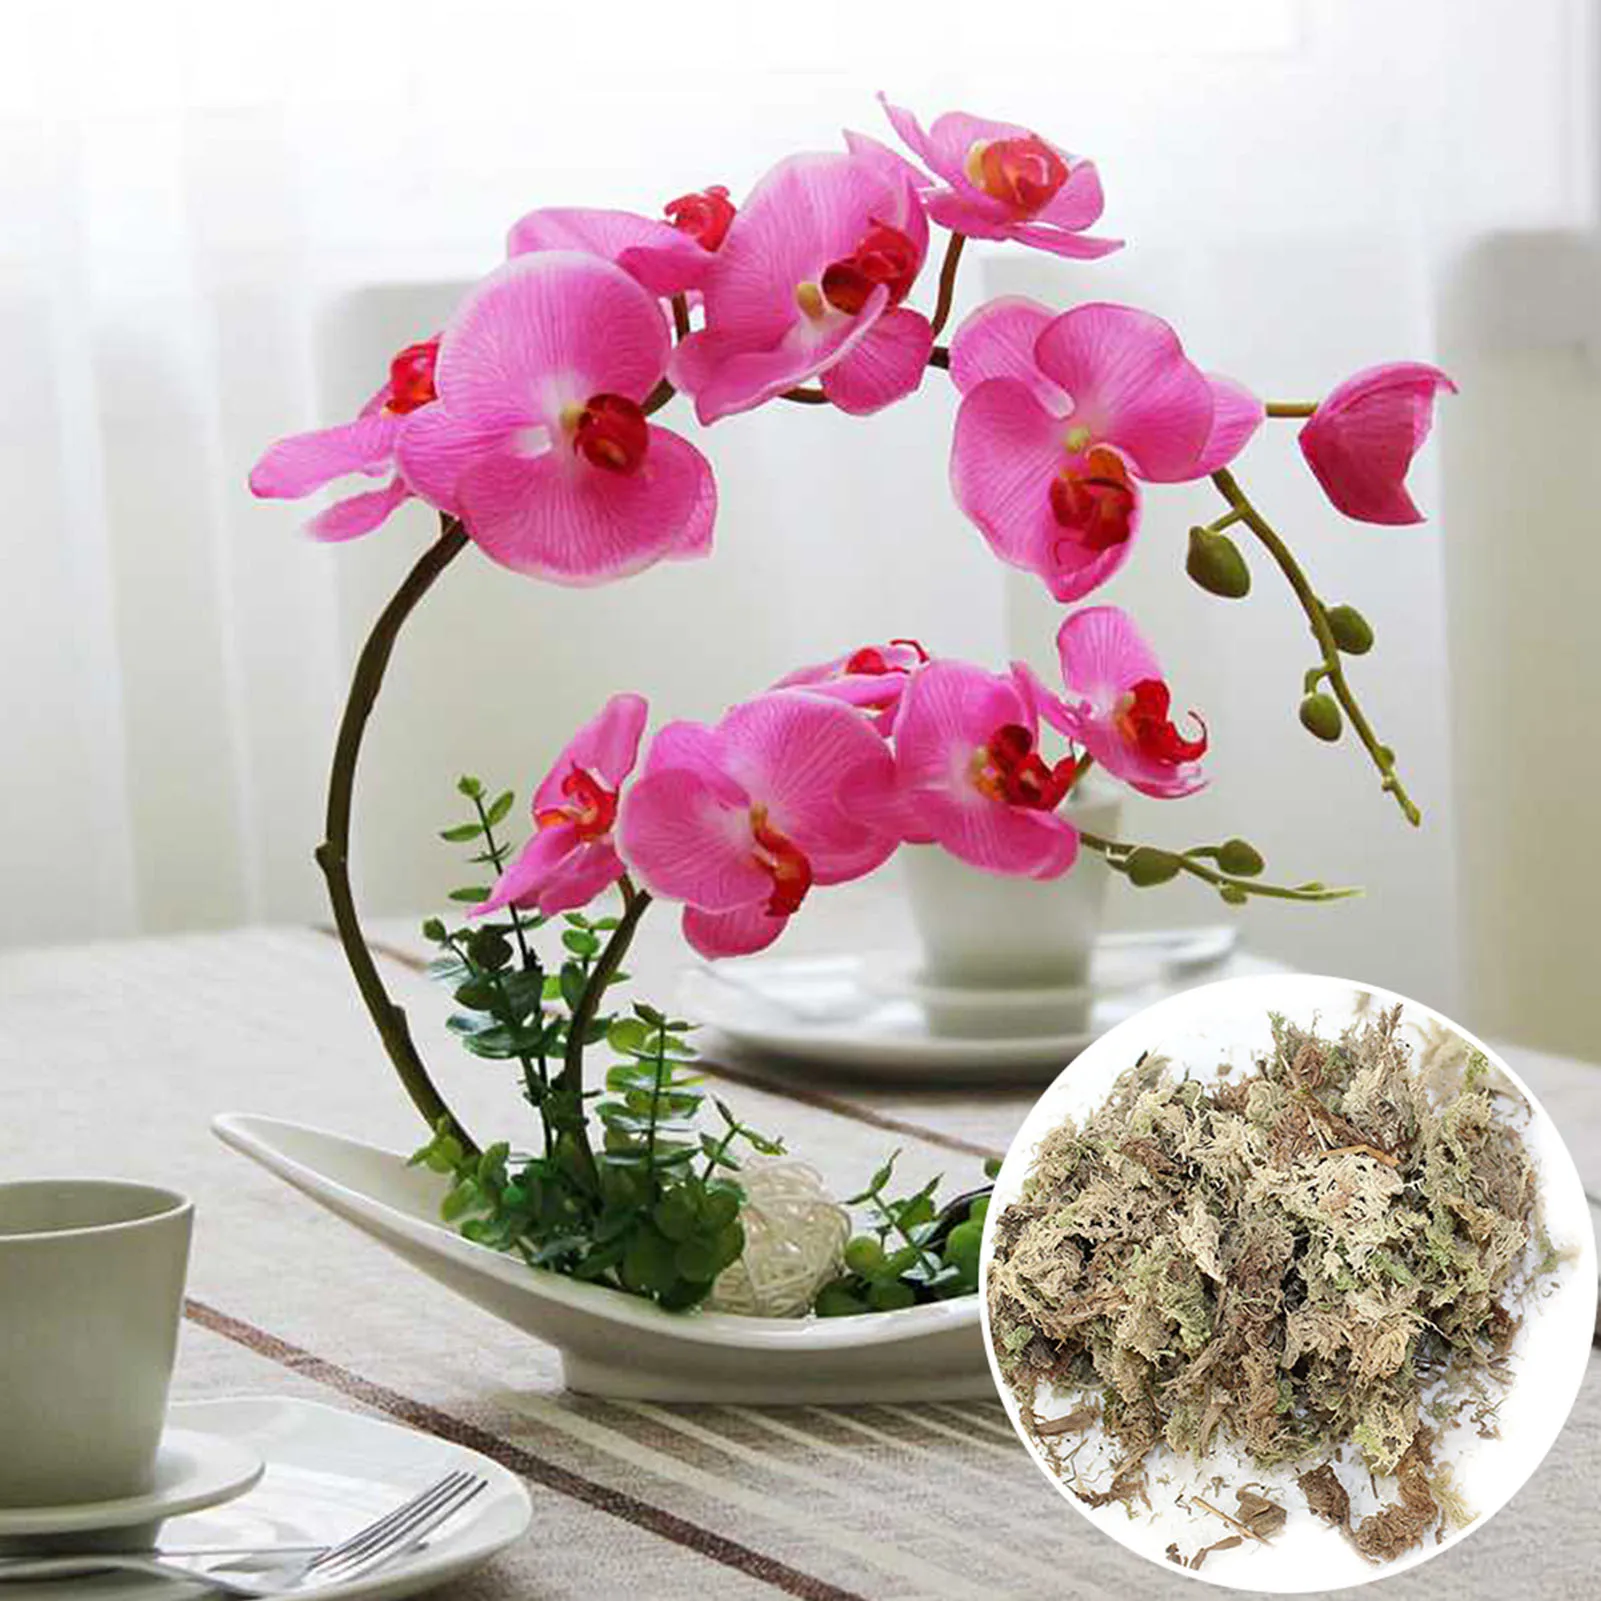 

Sphagnum Moss Garden Supplies Orchid Potting Mix Moisturizing Nutrition Organic Fertilizer For Butterfly Orchid Flowerpot Decor